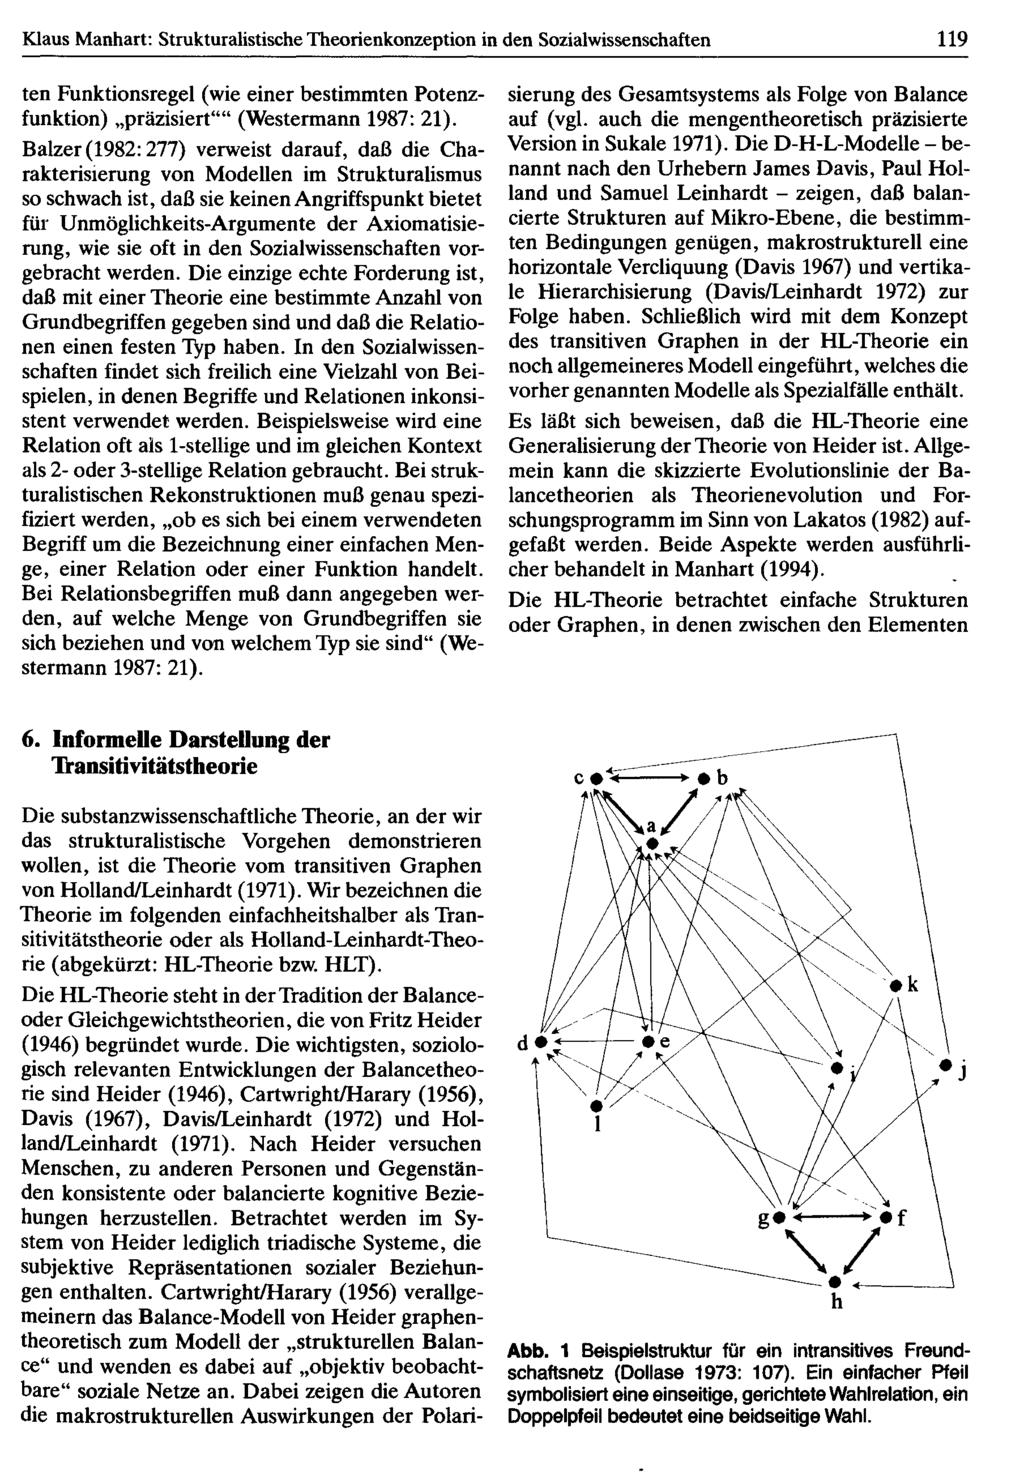 Klaus Manhart: Strukturalistische Theorienkonzeption in den Sozialwissenschaften 119 ten Funktionsregel (wie einer bestimmten Potenzfunktion) präzisiert (Westermann 1987: 21).